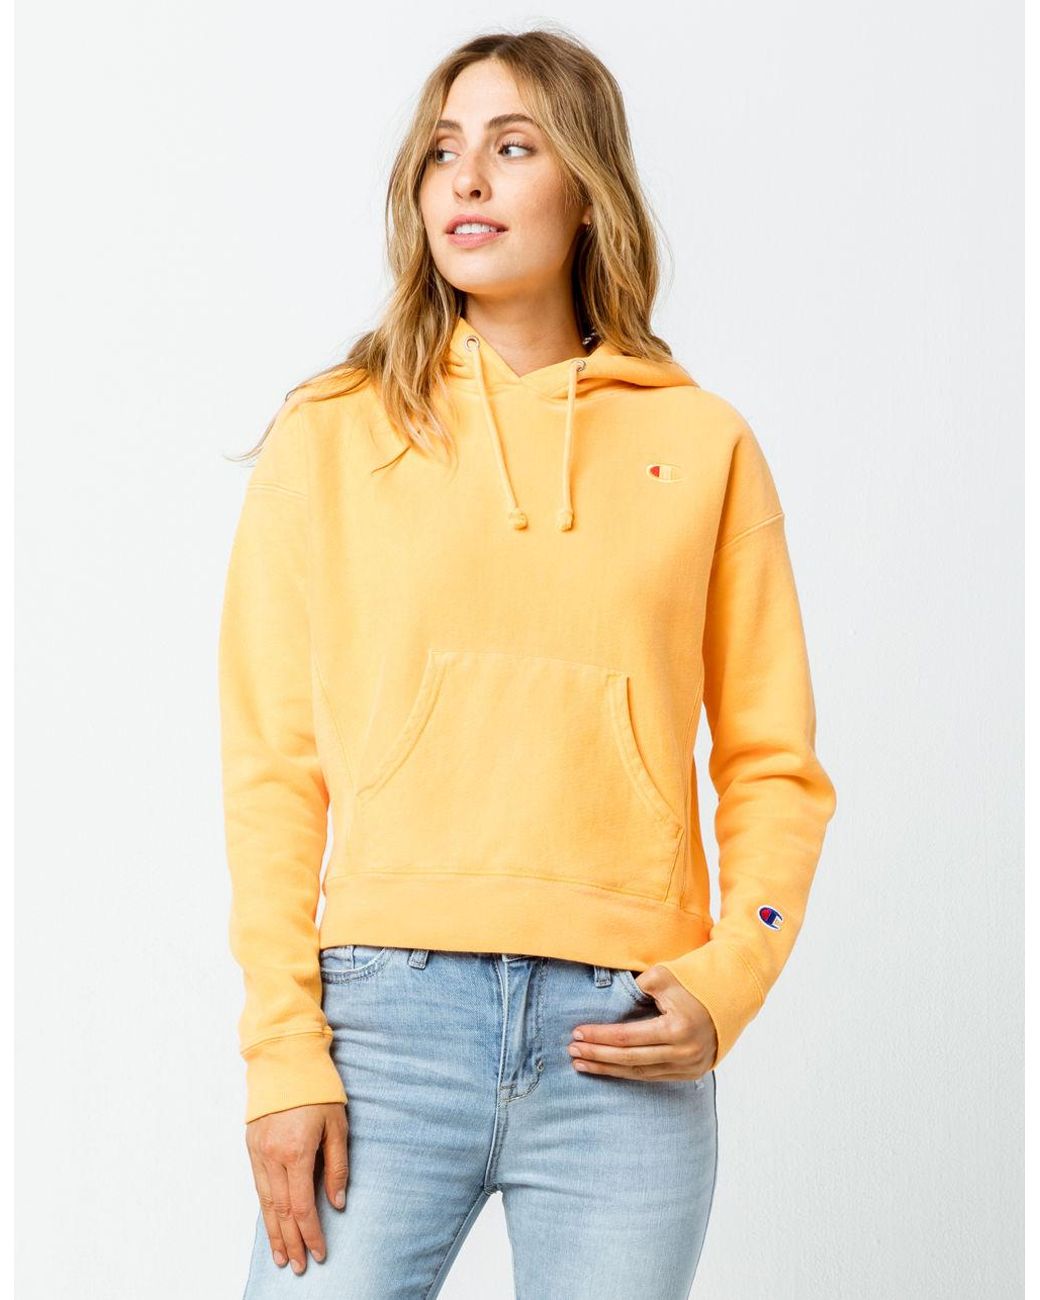 Womens Light Yellow Champion Sweatshirt 